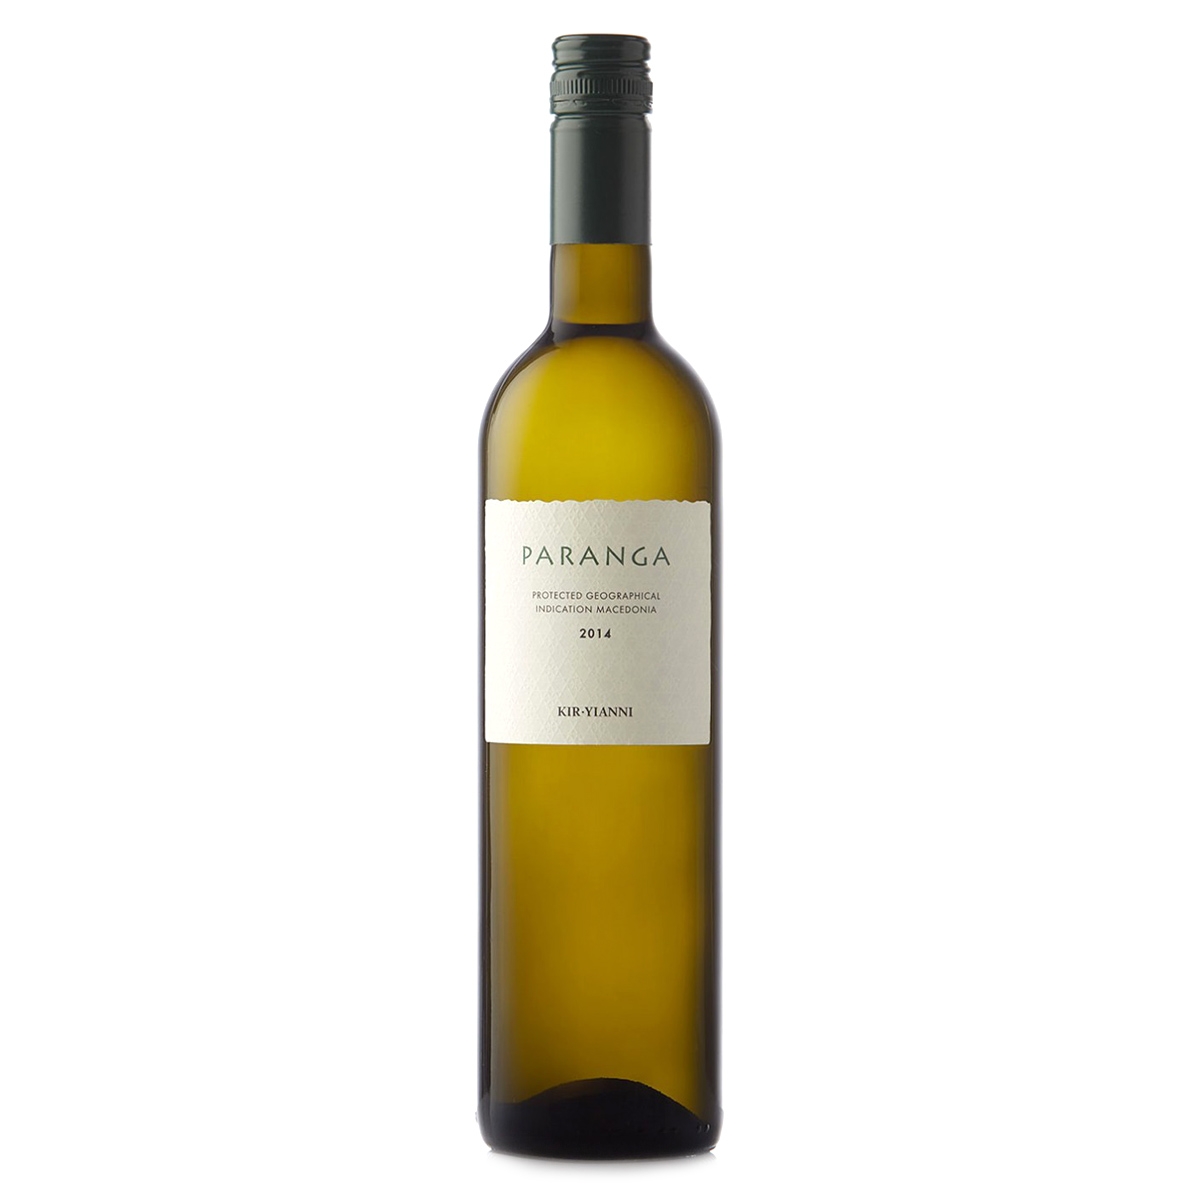 Paranga weiß Kir Yianni | Weißwein trocken (0,75 l) g.g.A. Makedonien